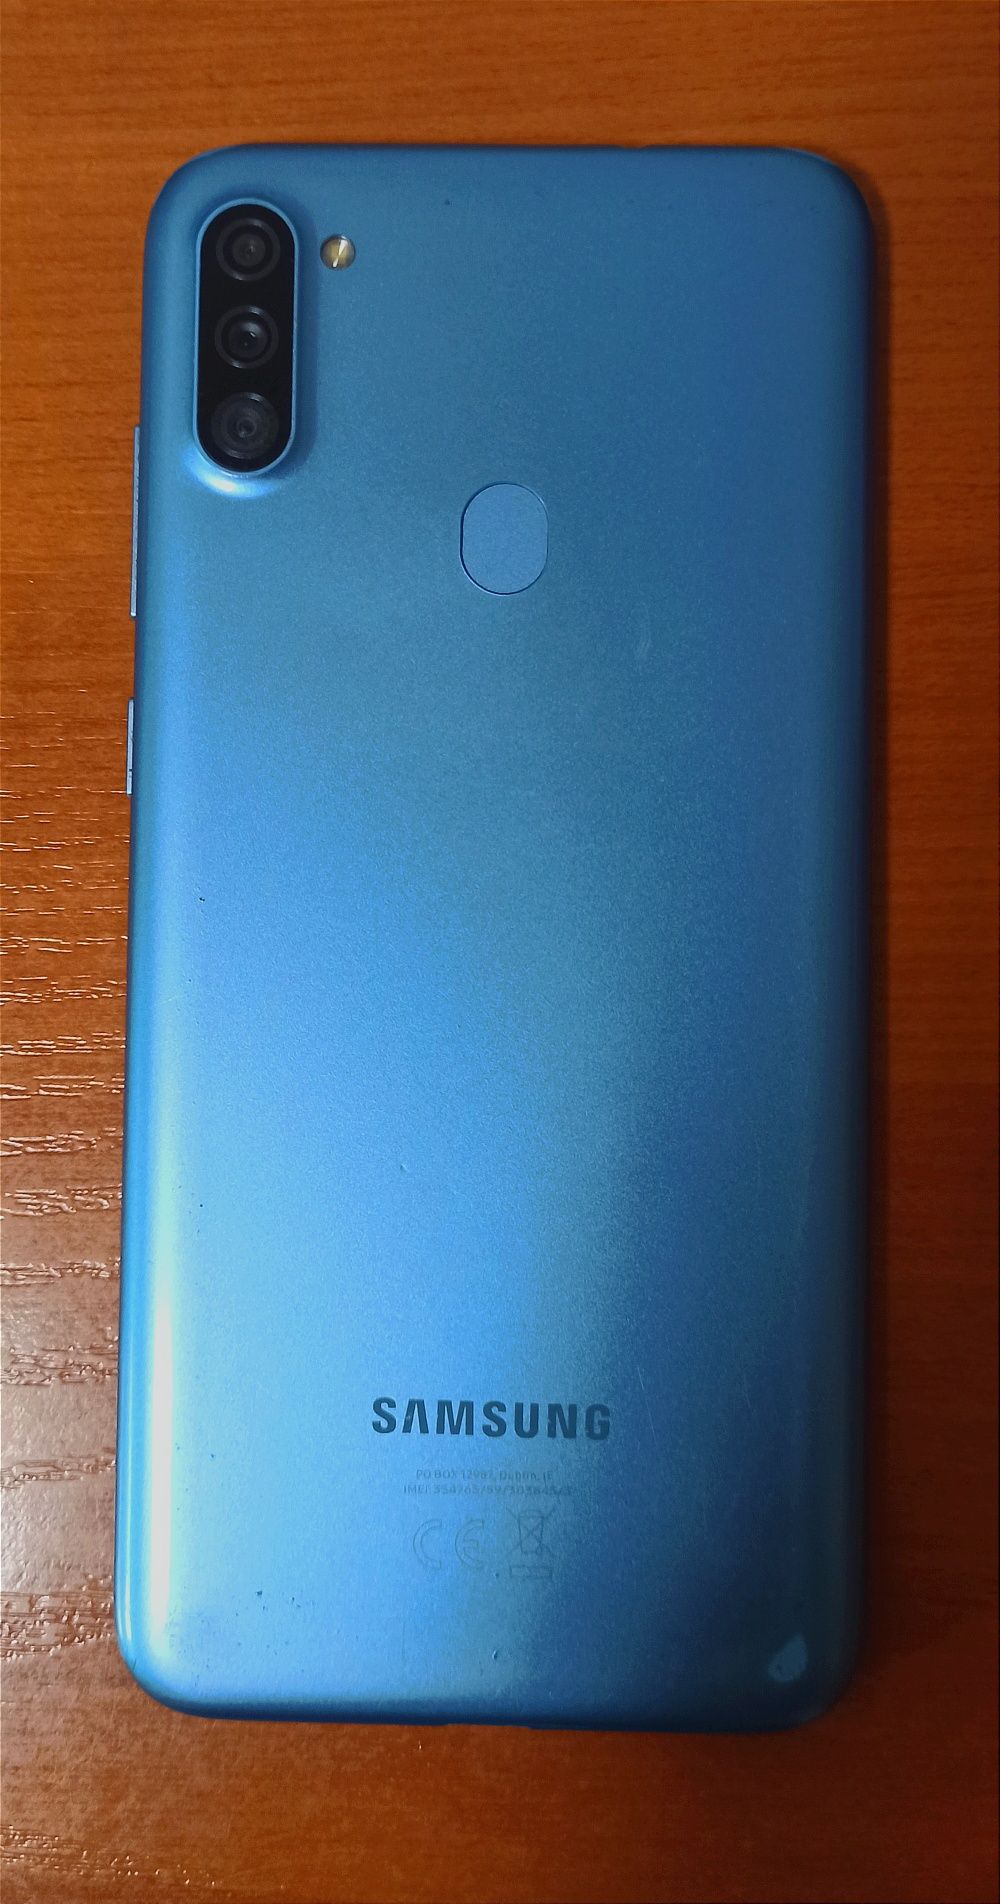 Samsung Galaxy A11 Dual SIM